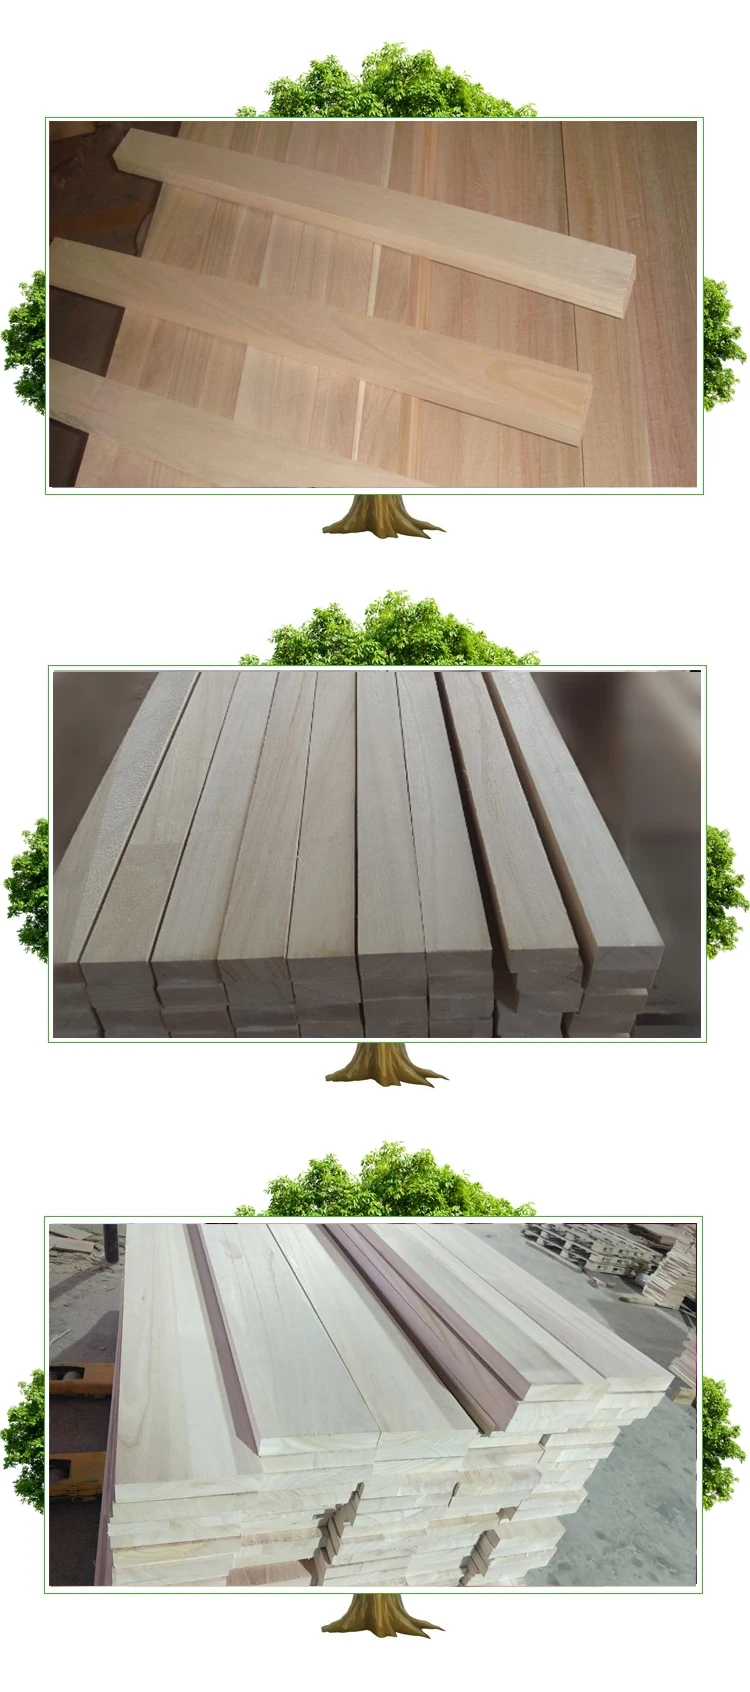 84 Lumber Prices Buy 2x4 Lumber 2x6 Lumber Raw Lumber 